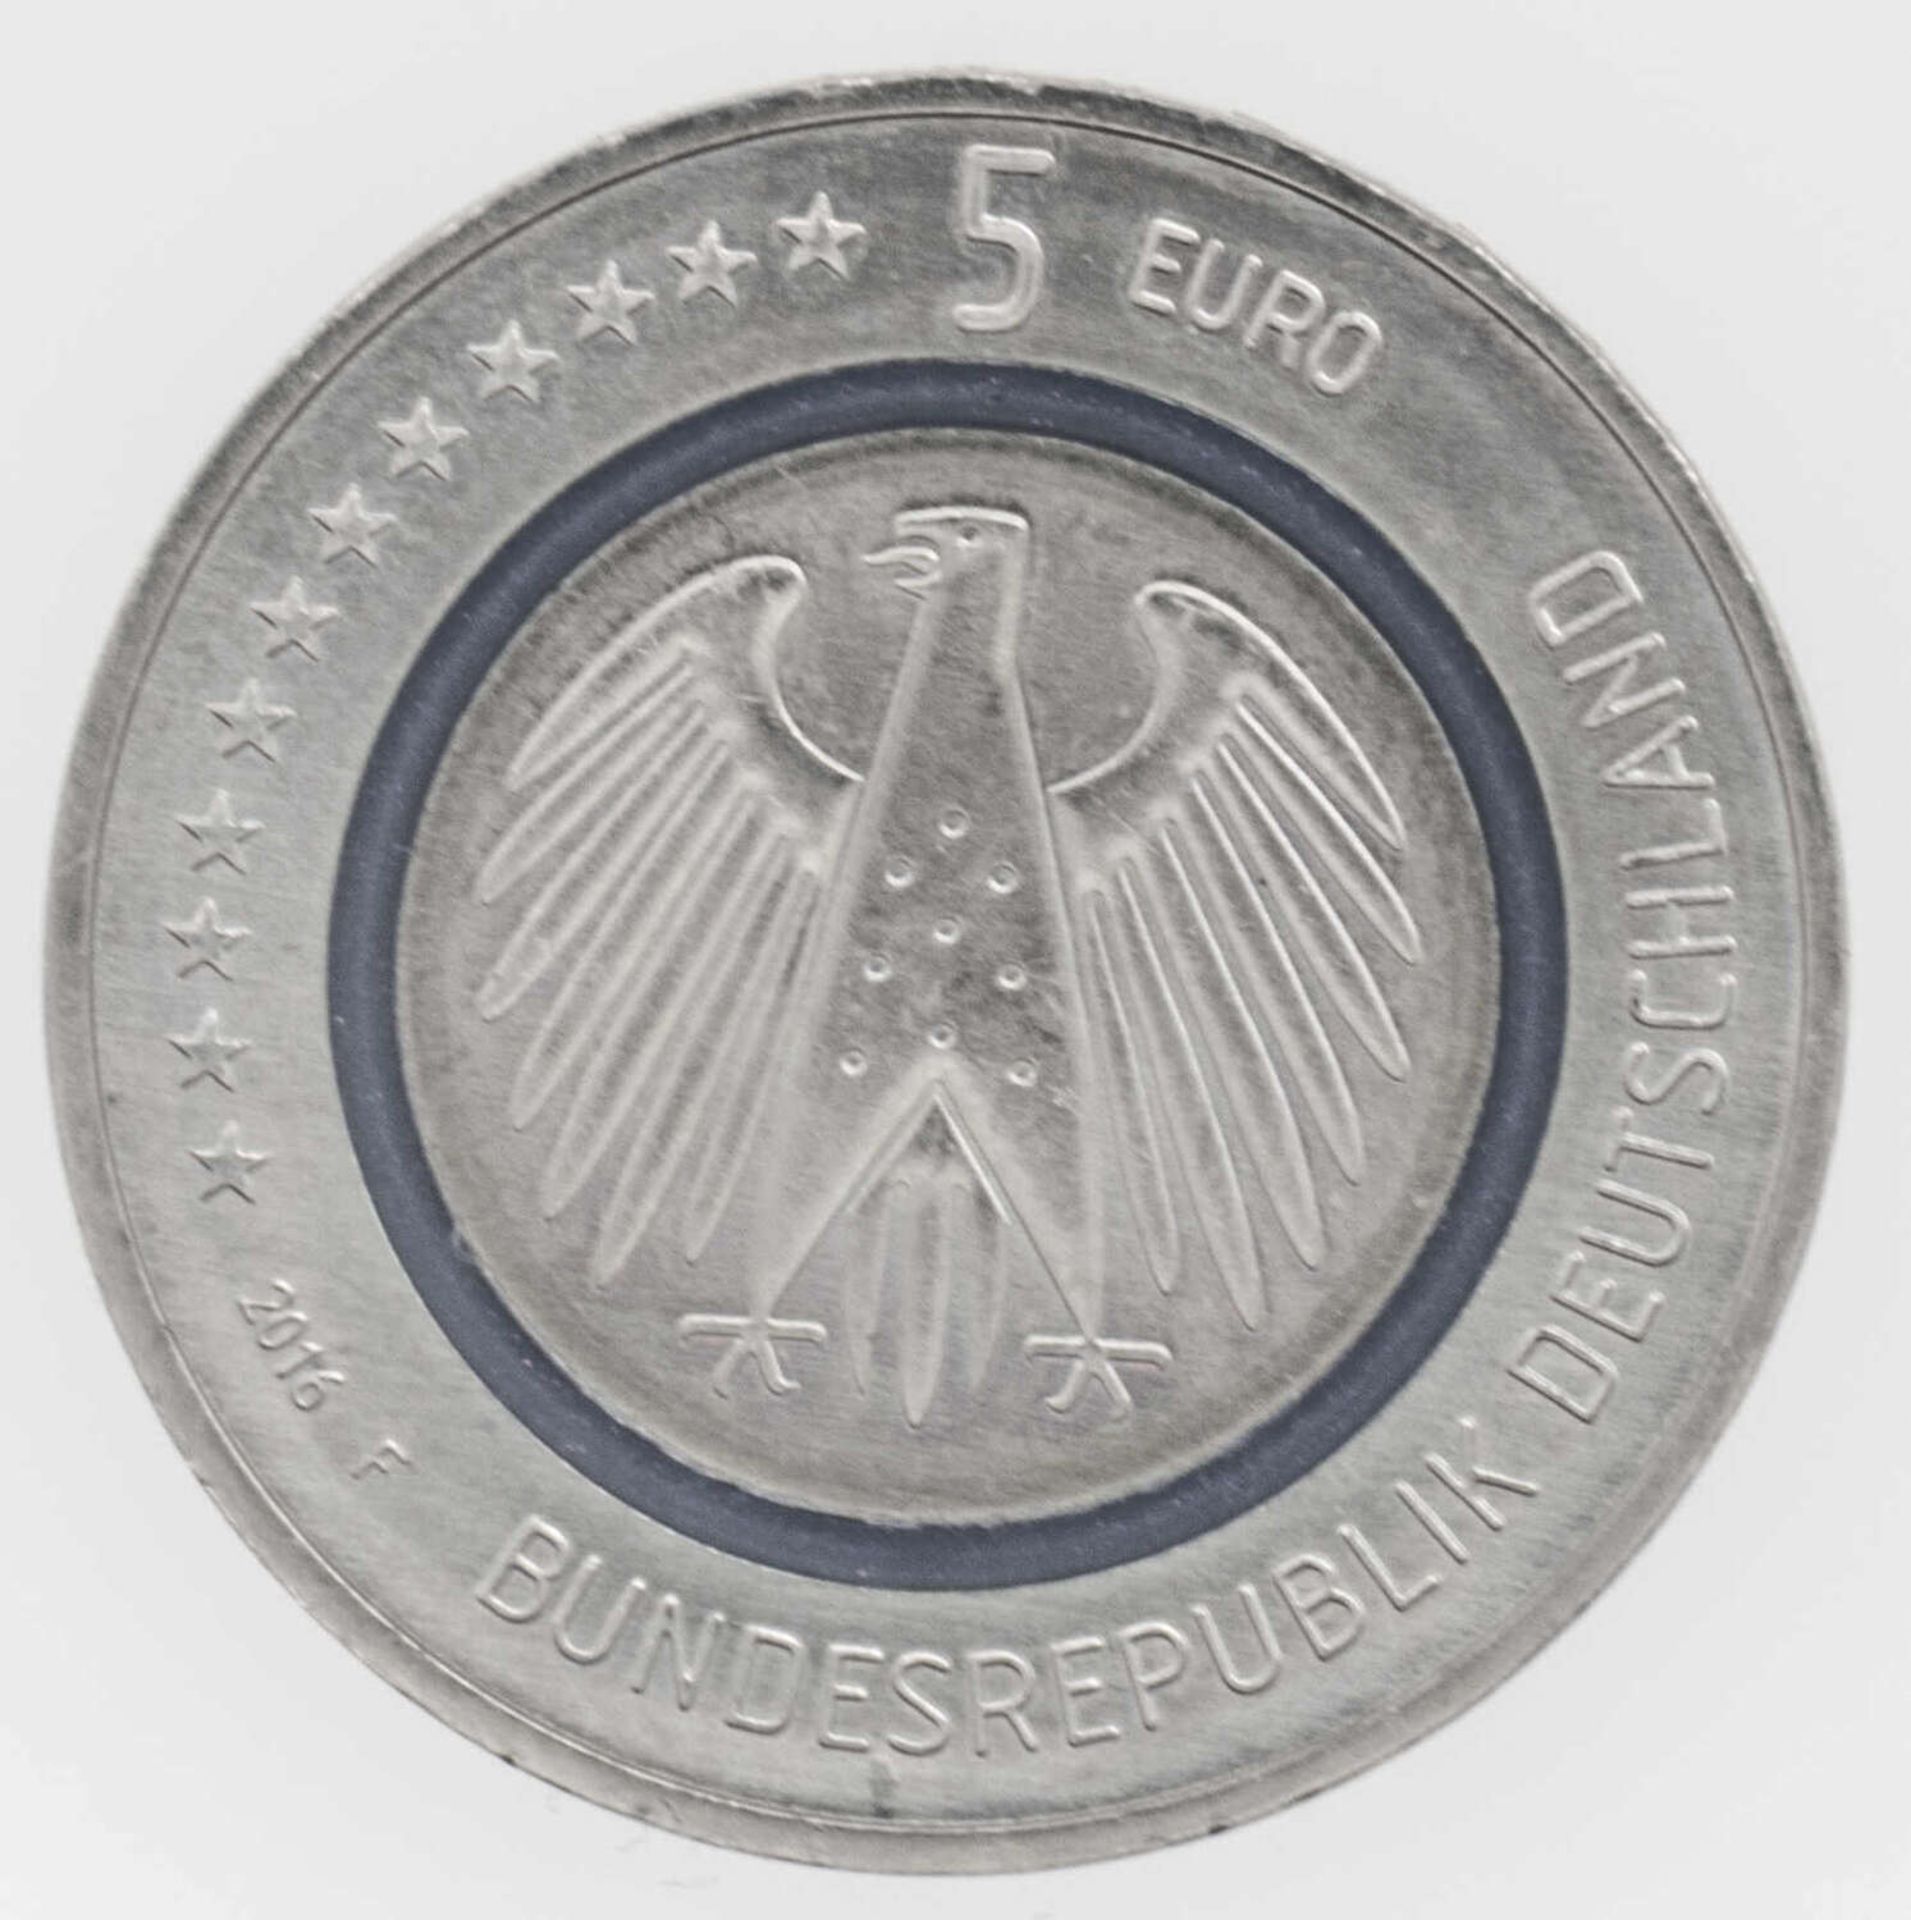 5 Euro Münze Blauer Planet Erde, 2016 F, Stuttgart mit blauen Polymerring5 Euro coin Blauer Planet